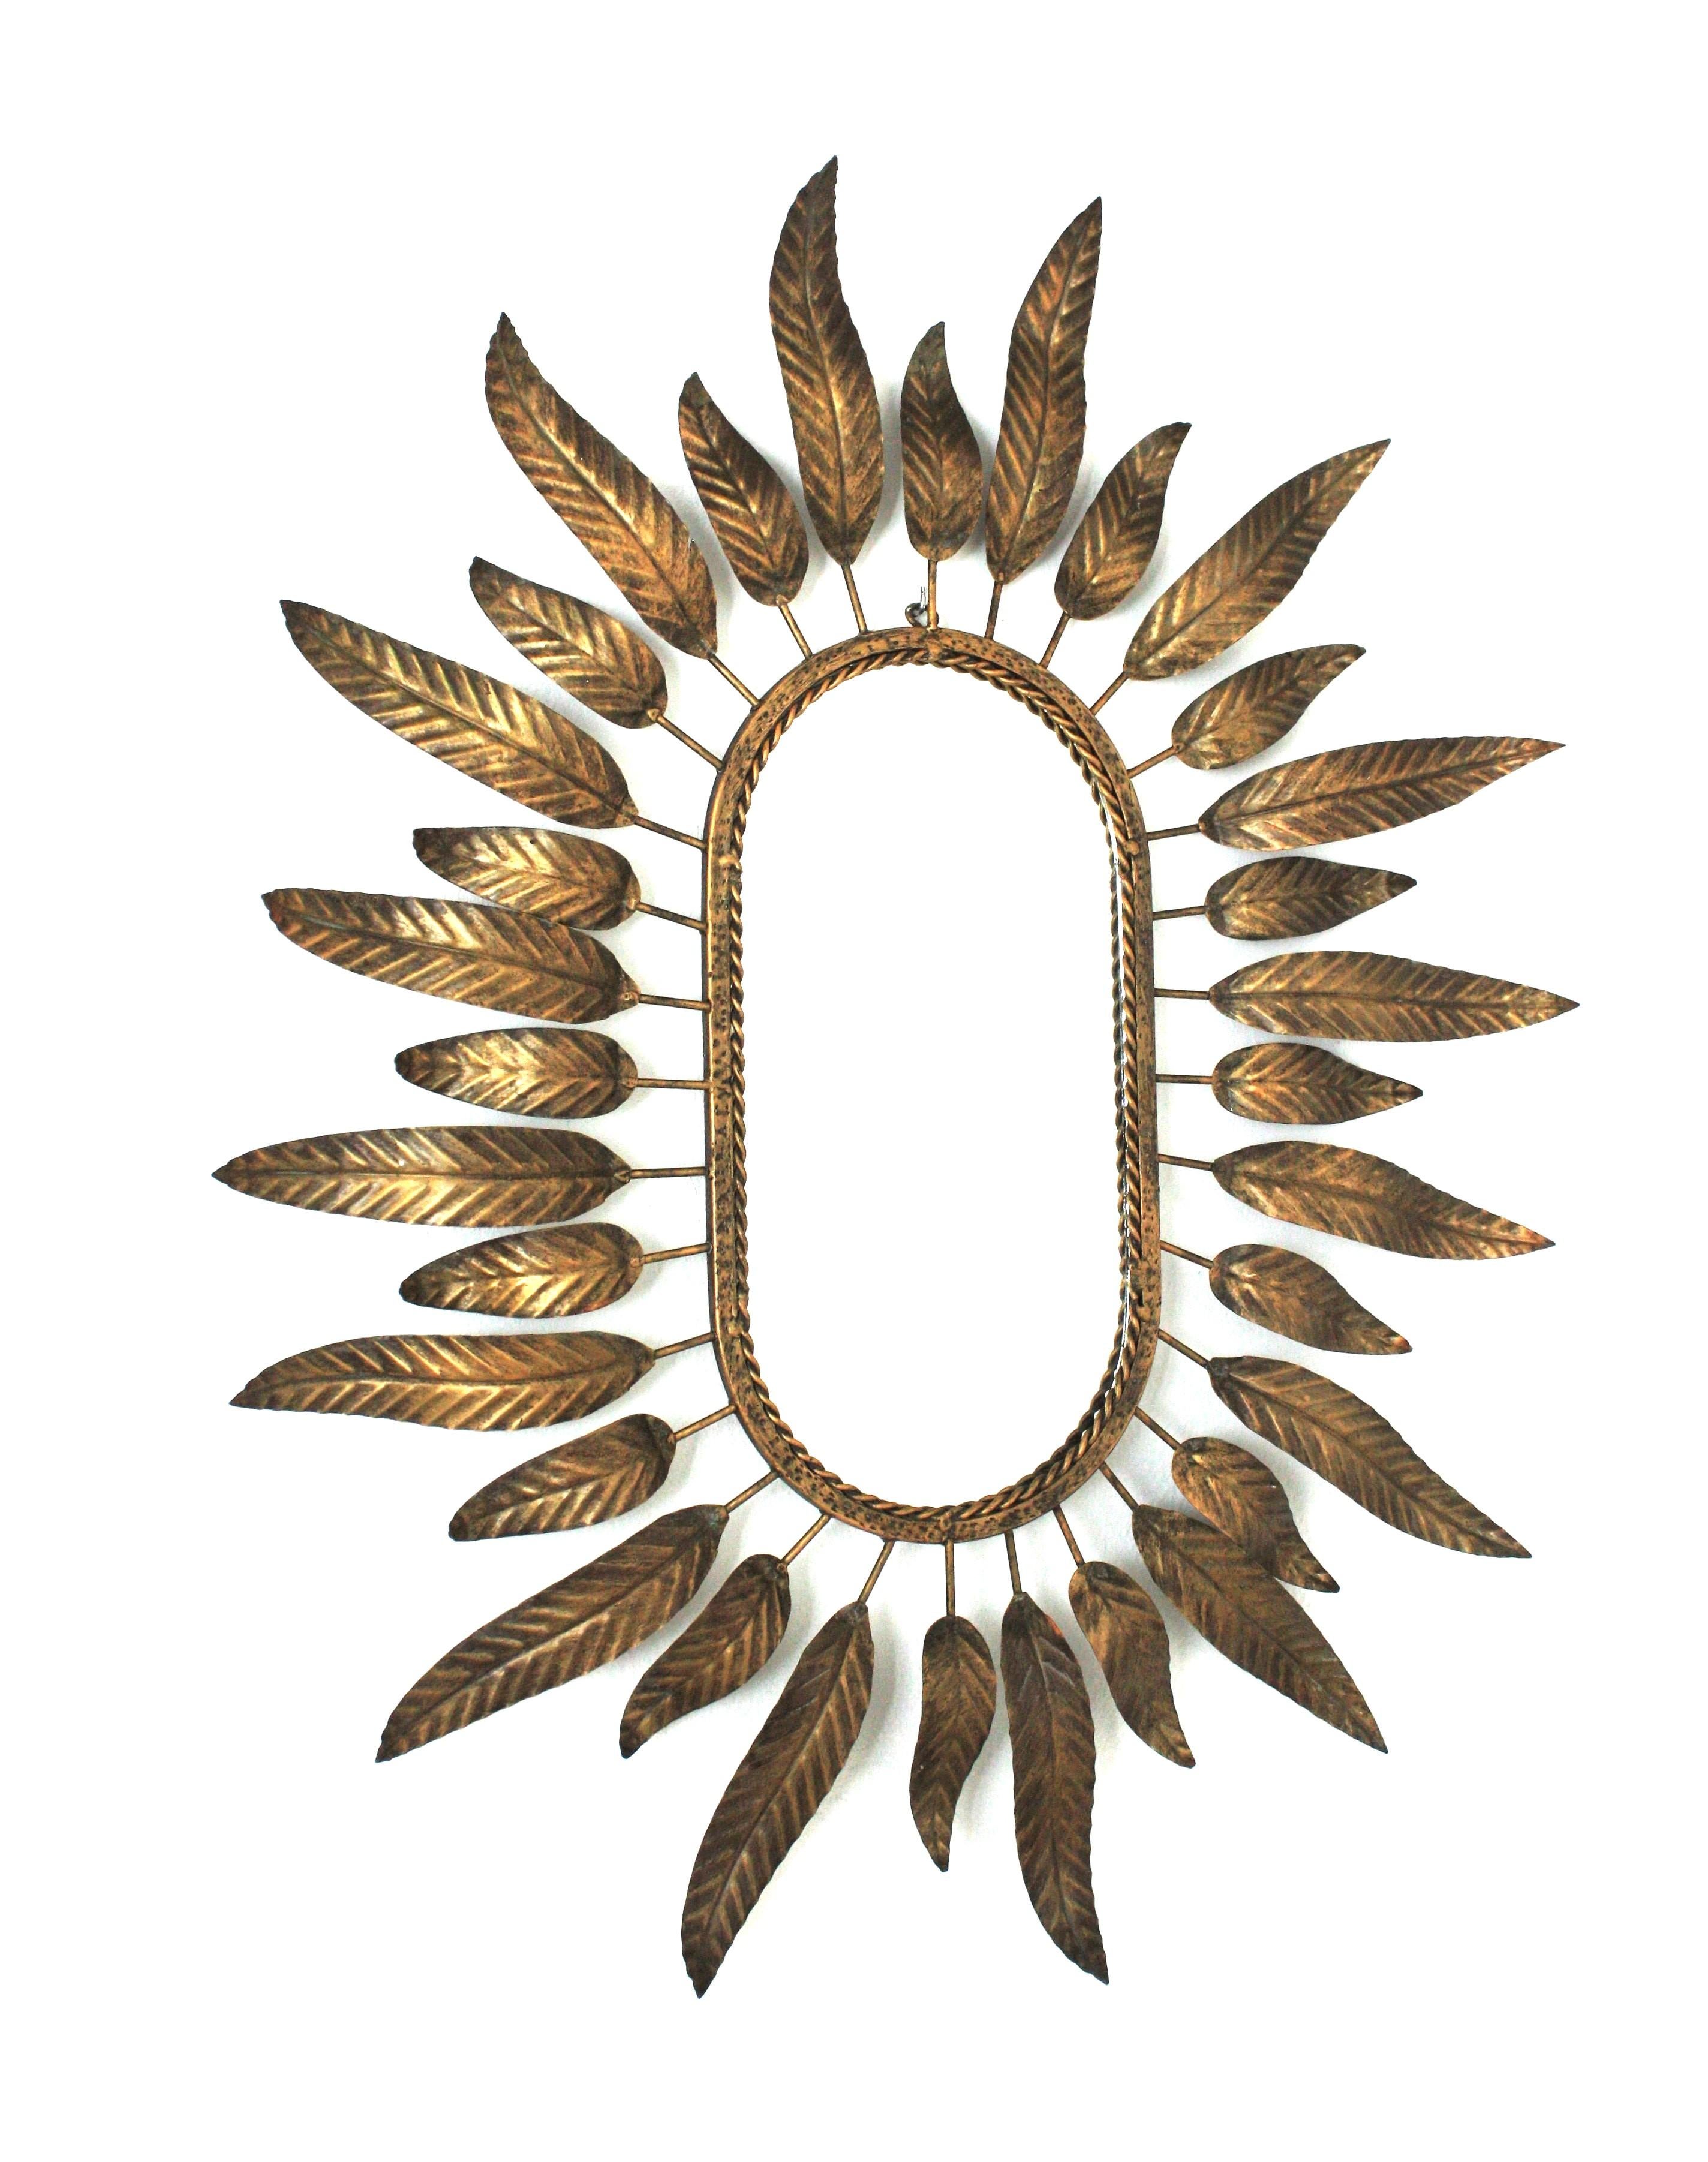 Miroir soleil en métal doré encadré par des feuilles. Espagne, années 1950-1960.

Ce miroir élégant combine les accents du Midcentury et de l'Hollywood Regency. D'élégantes feuilles incurvées en deux tailles entourent le miroir central ovale en